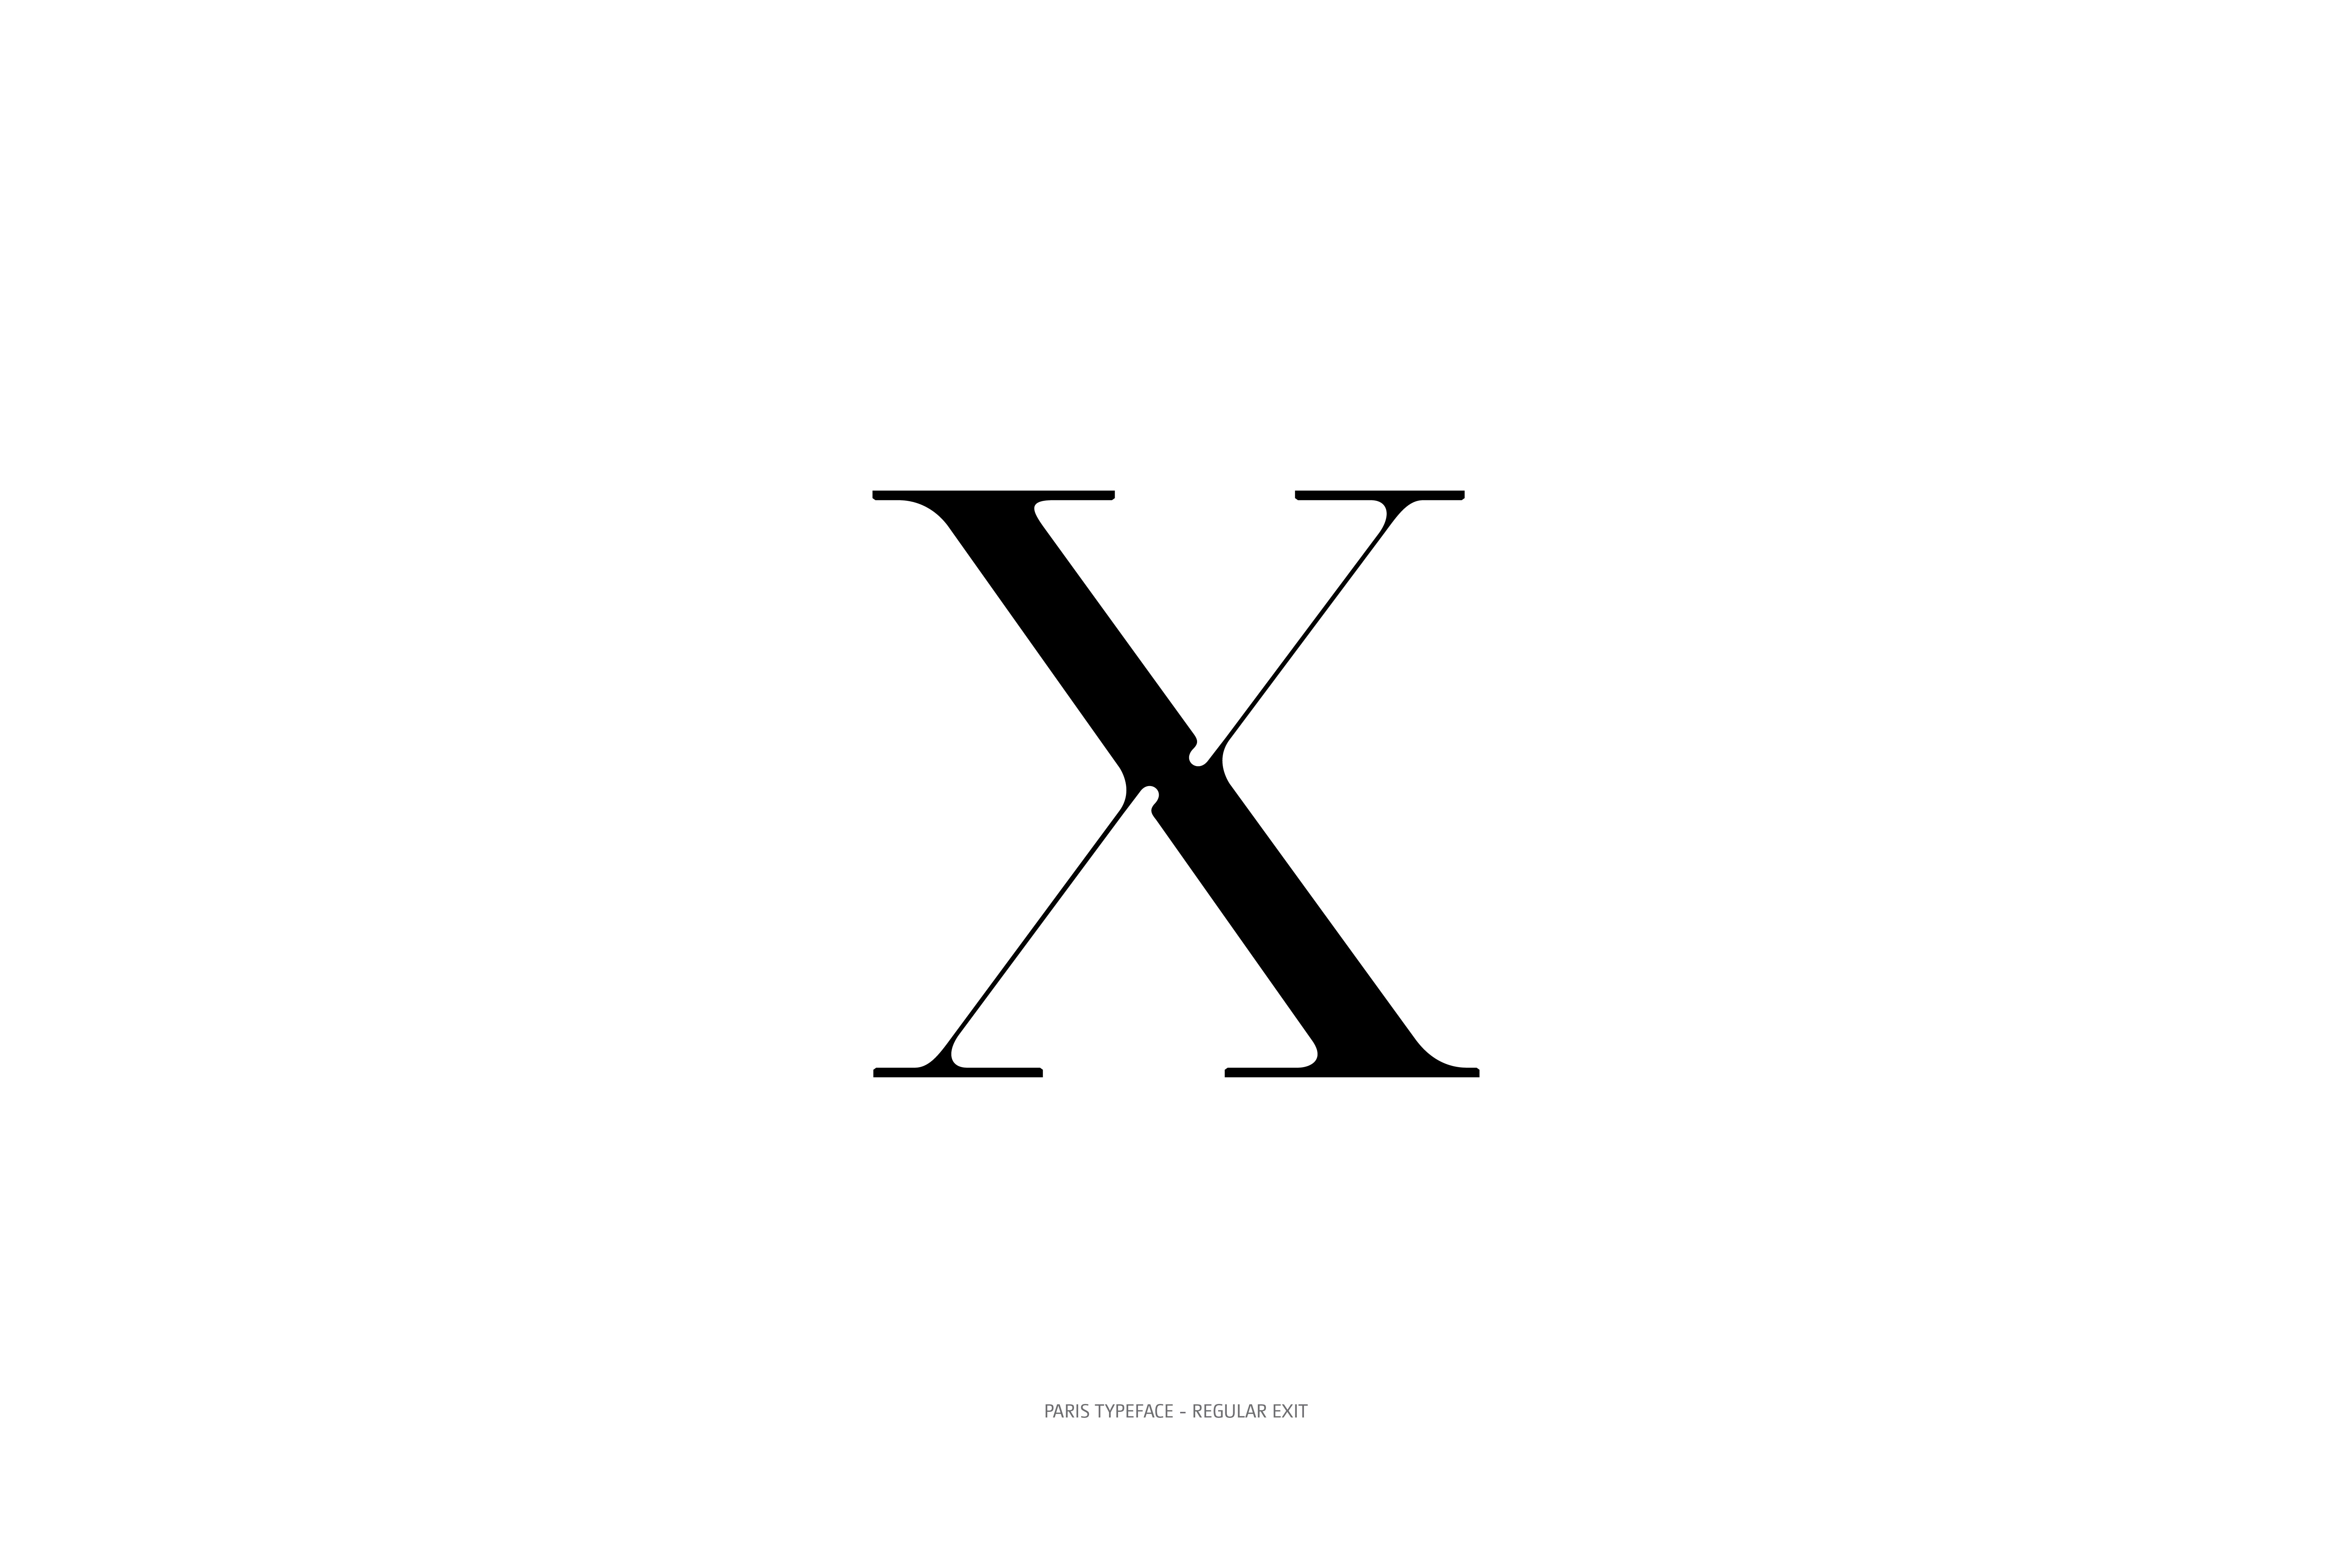 Paris Typeface Regular Exit X